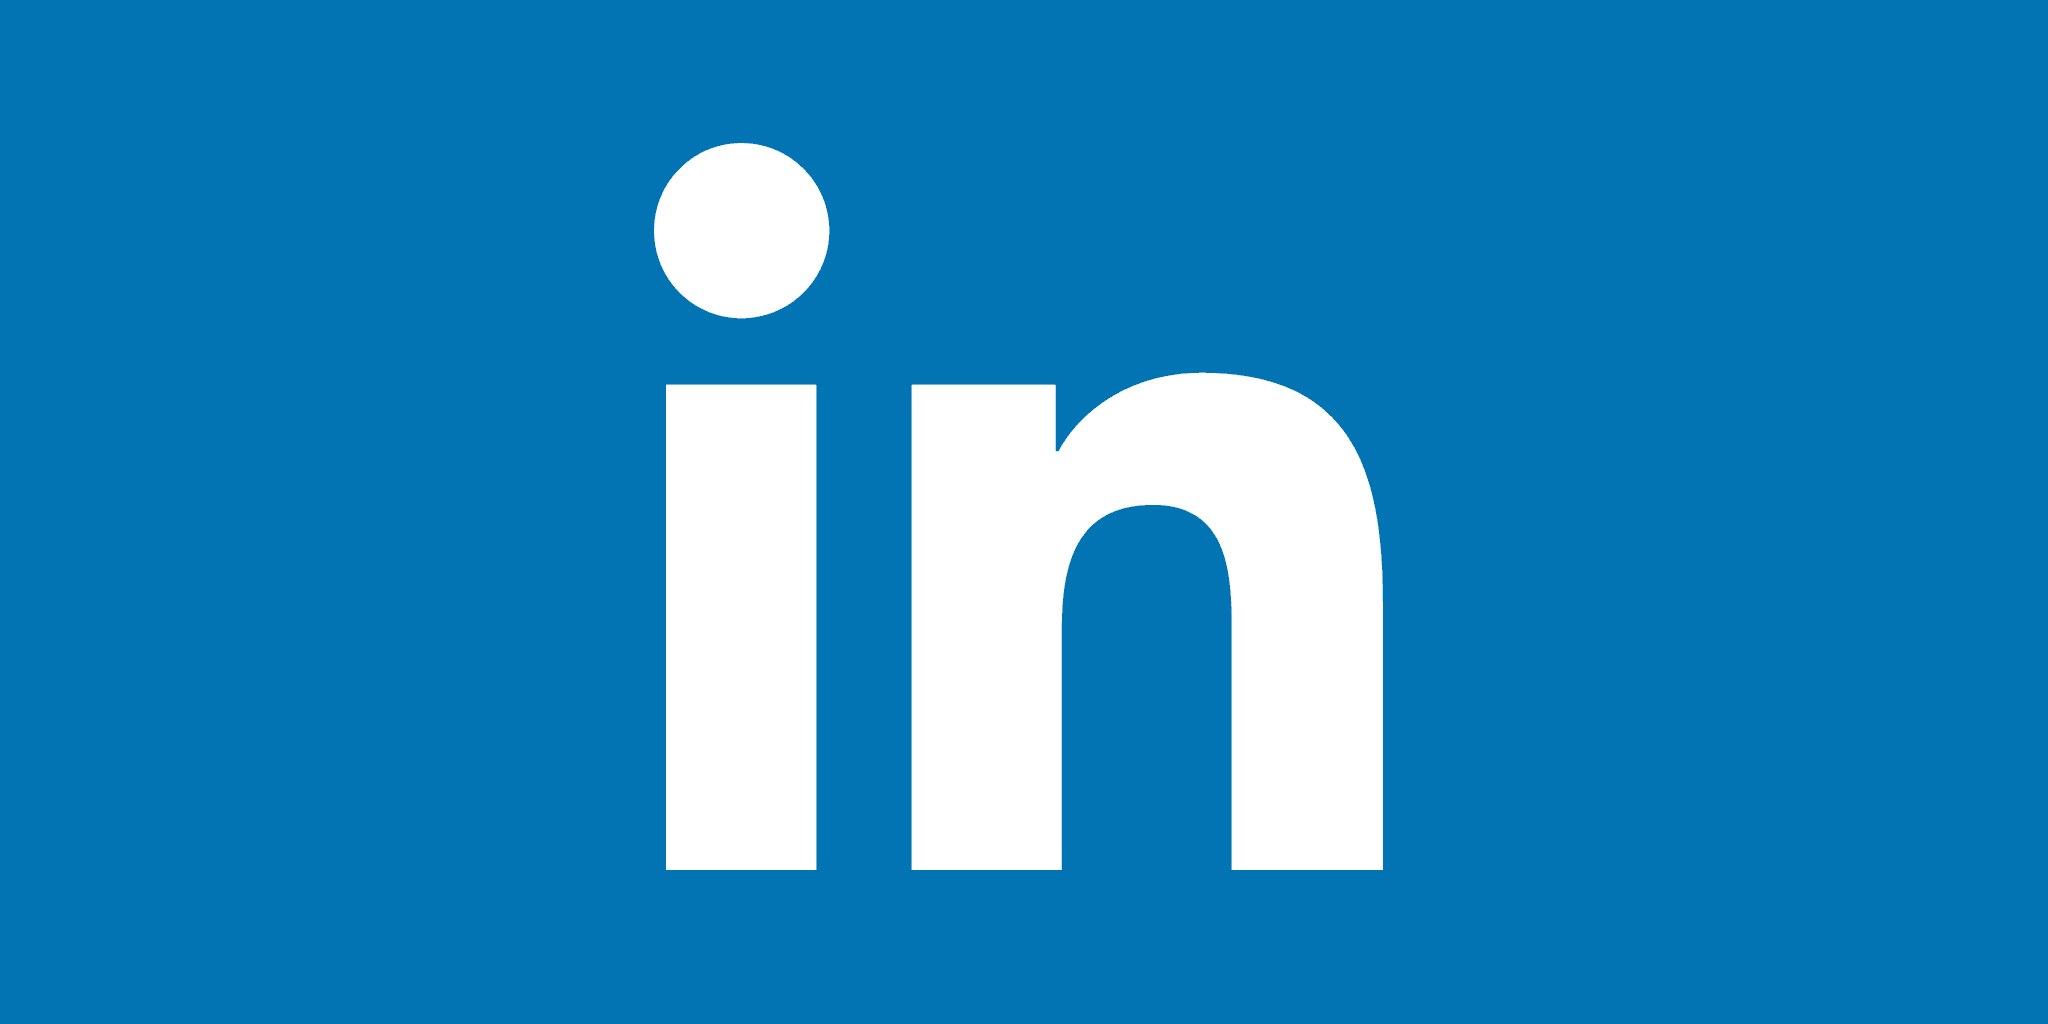  كسب العملاء عبر LinkedIn